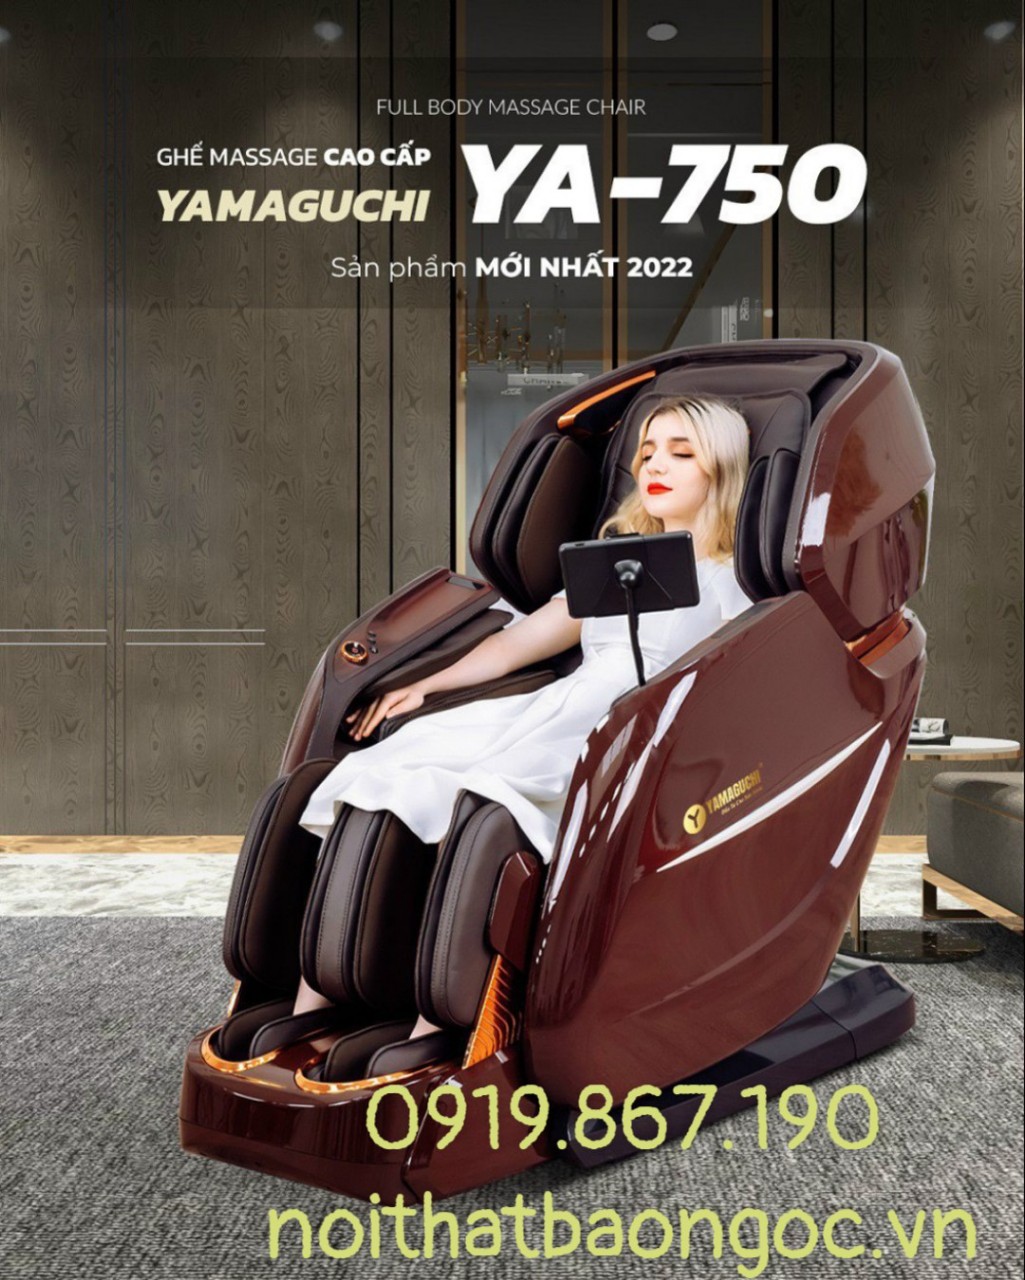 GHẾ MASSAGE YAMAGUCHI YA-750